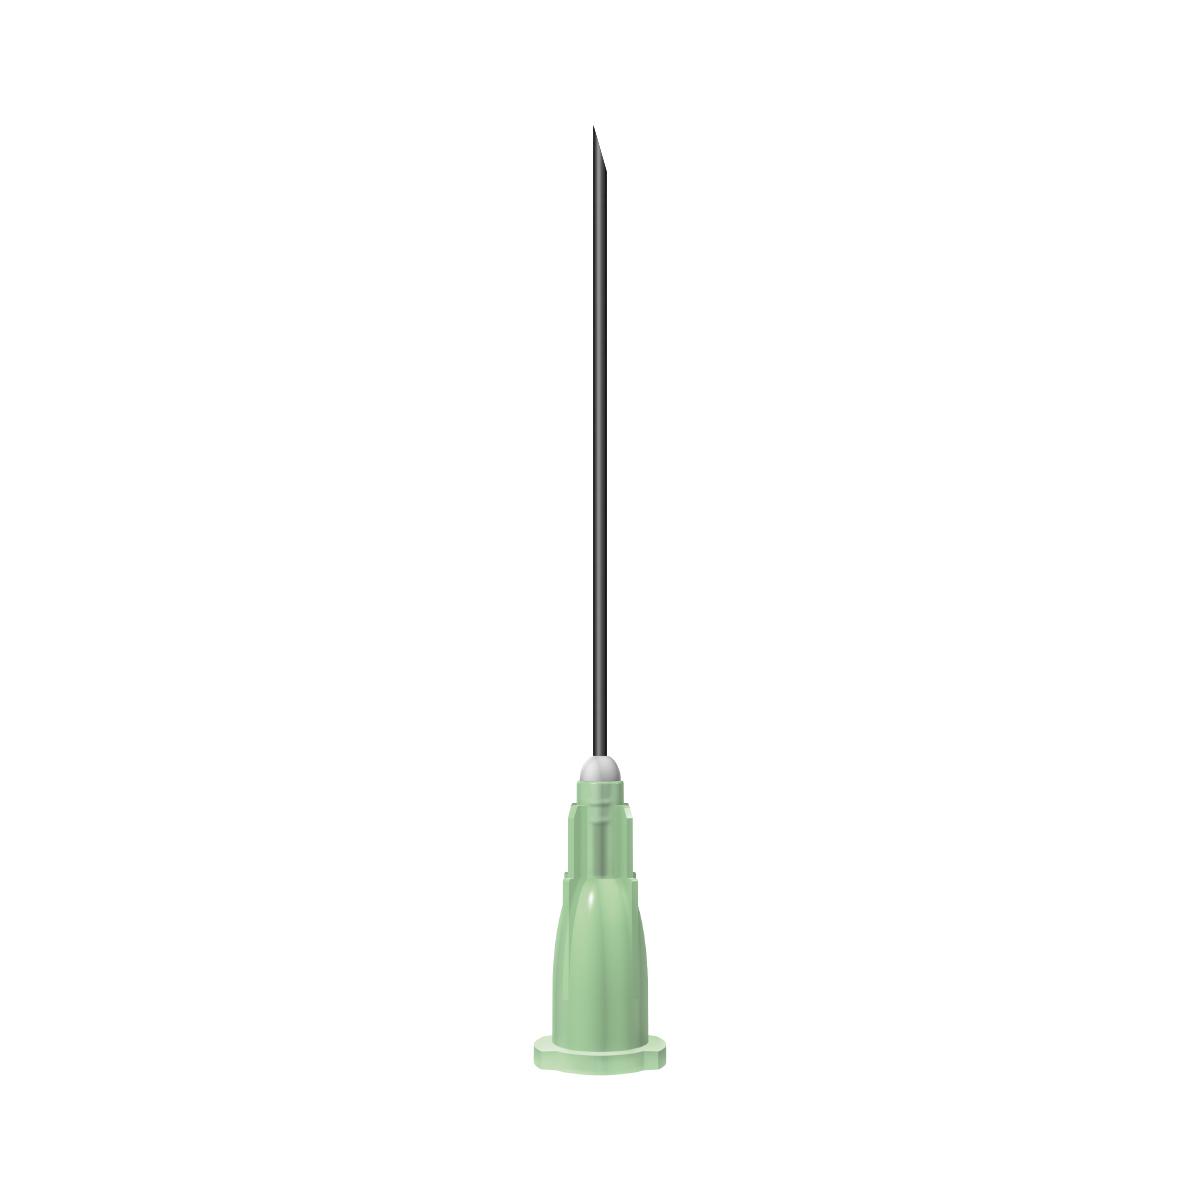 Unisharp: Green 21G 38mm (1½  inch) needle